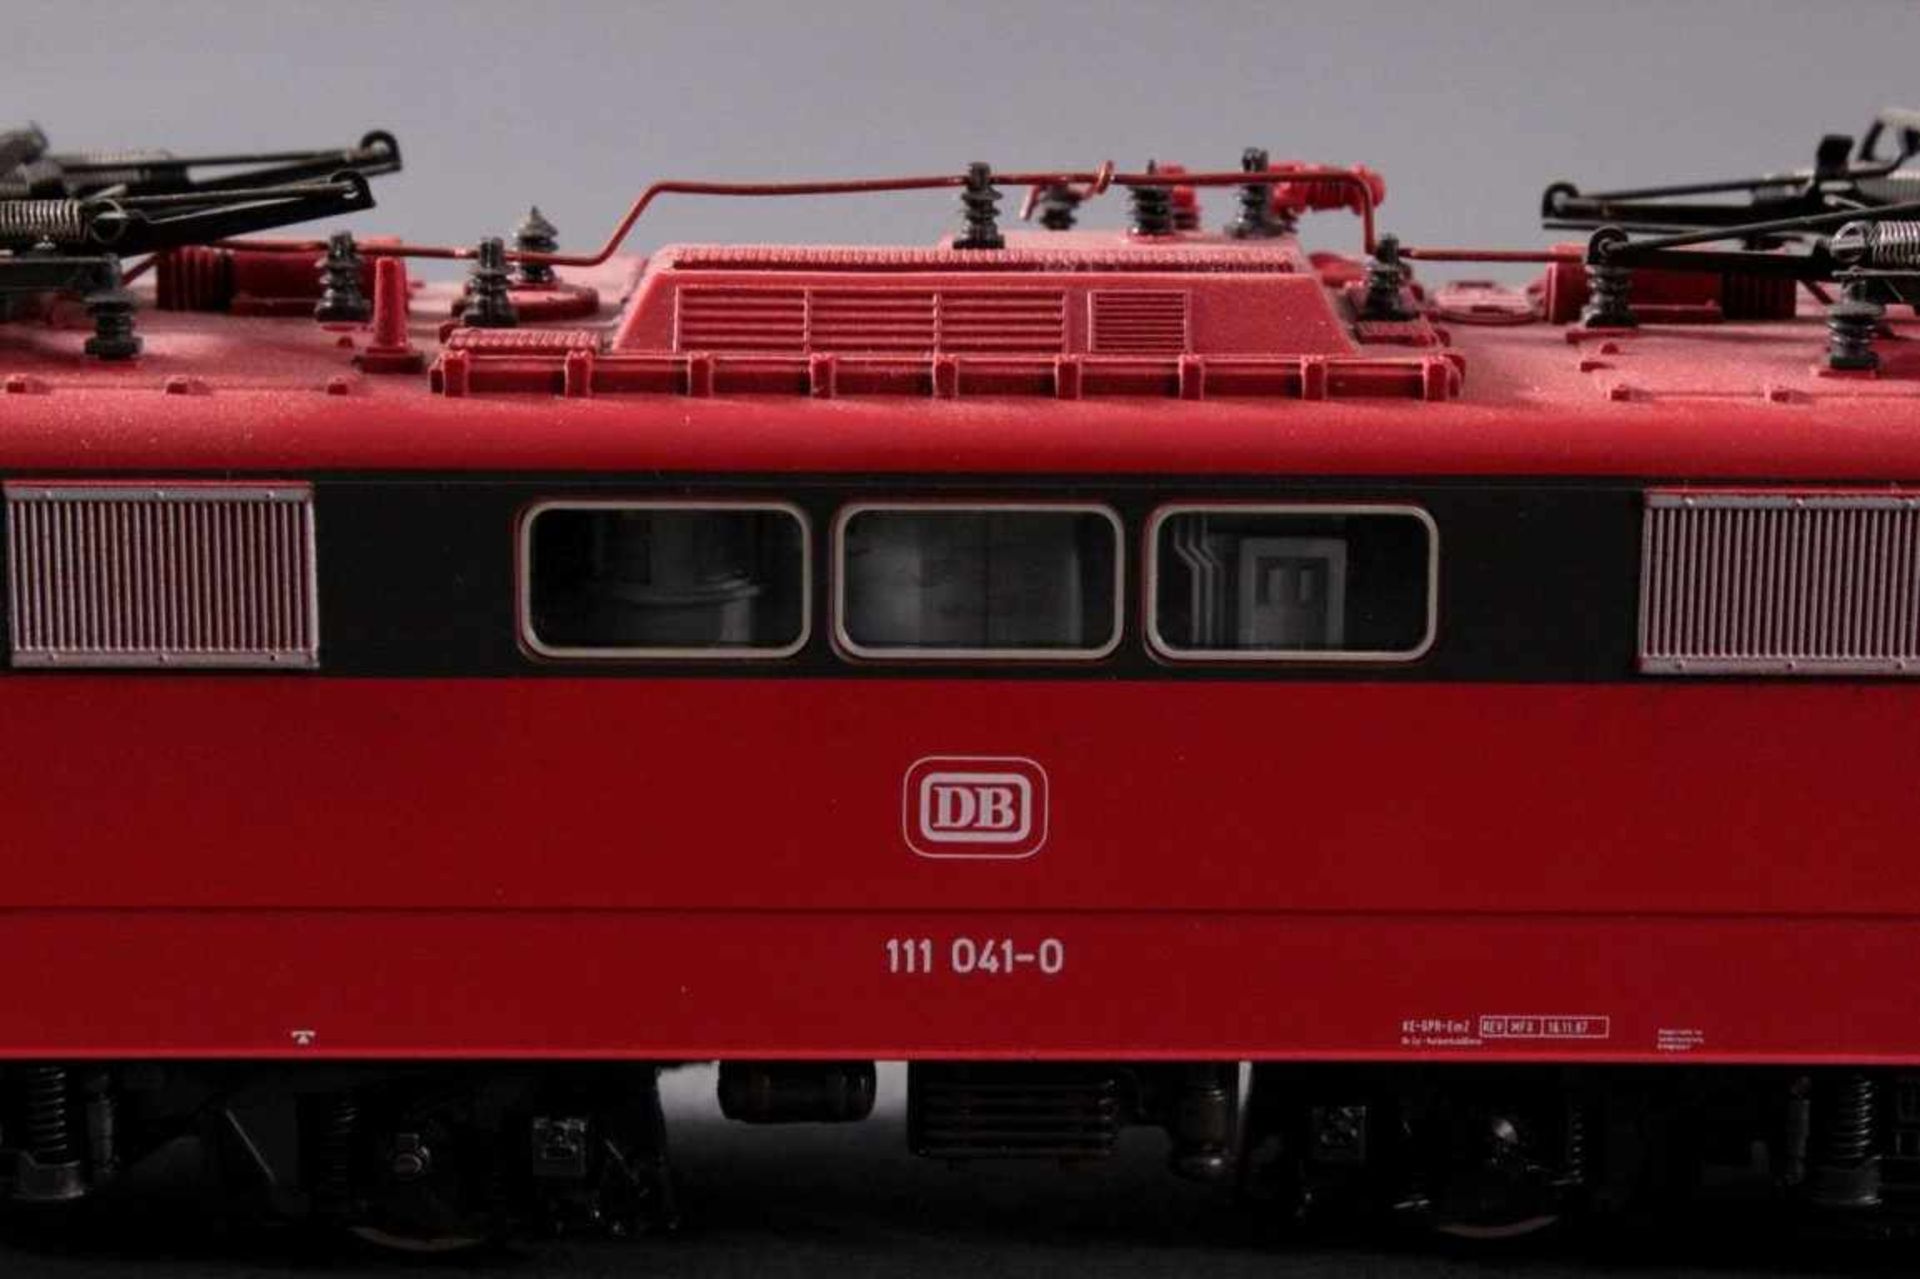 Märklin H0 3660 E-Lok Baureihe 111 041-0 DB in rot mit5 Güterwaggons - Bild 3 aus 3